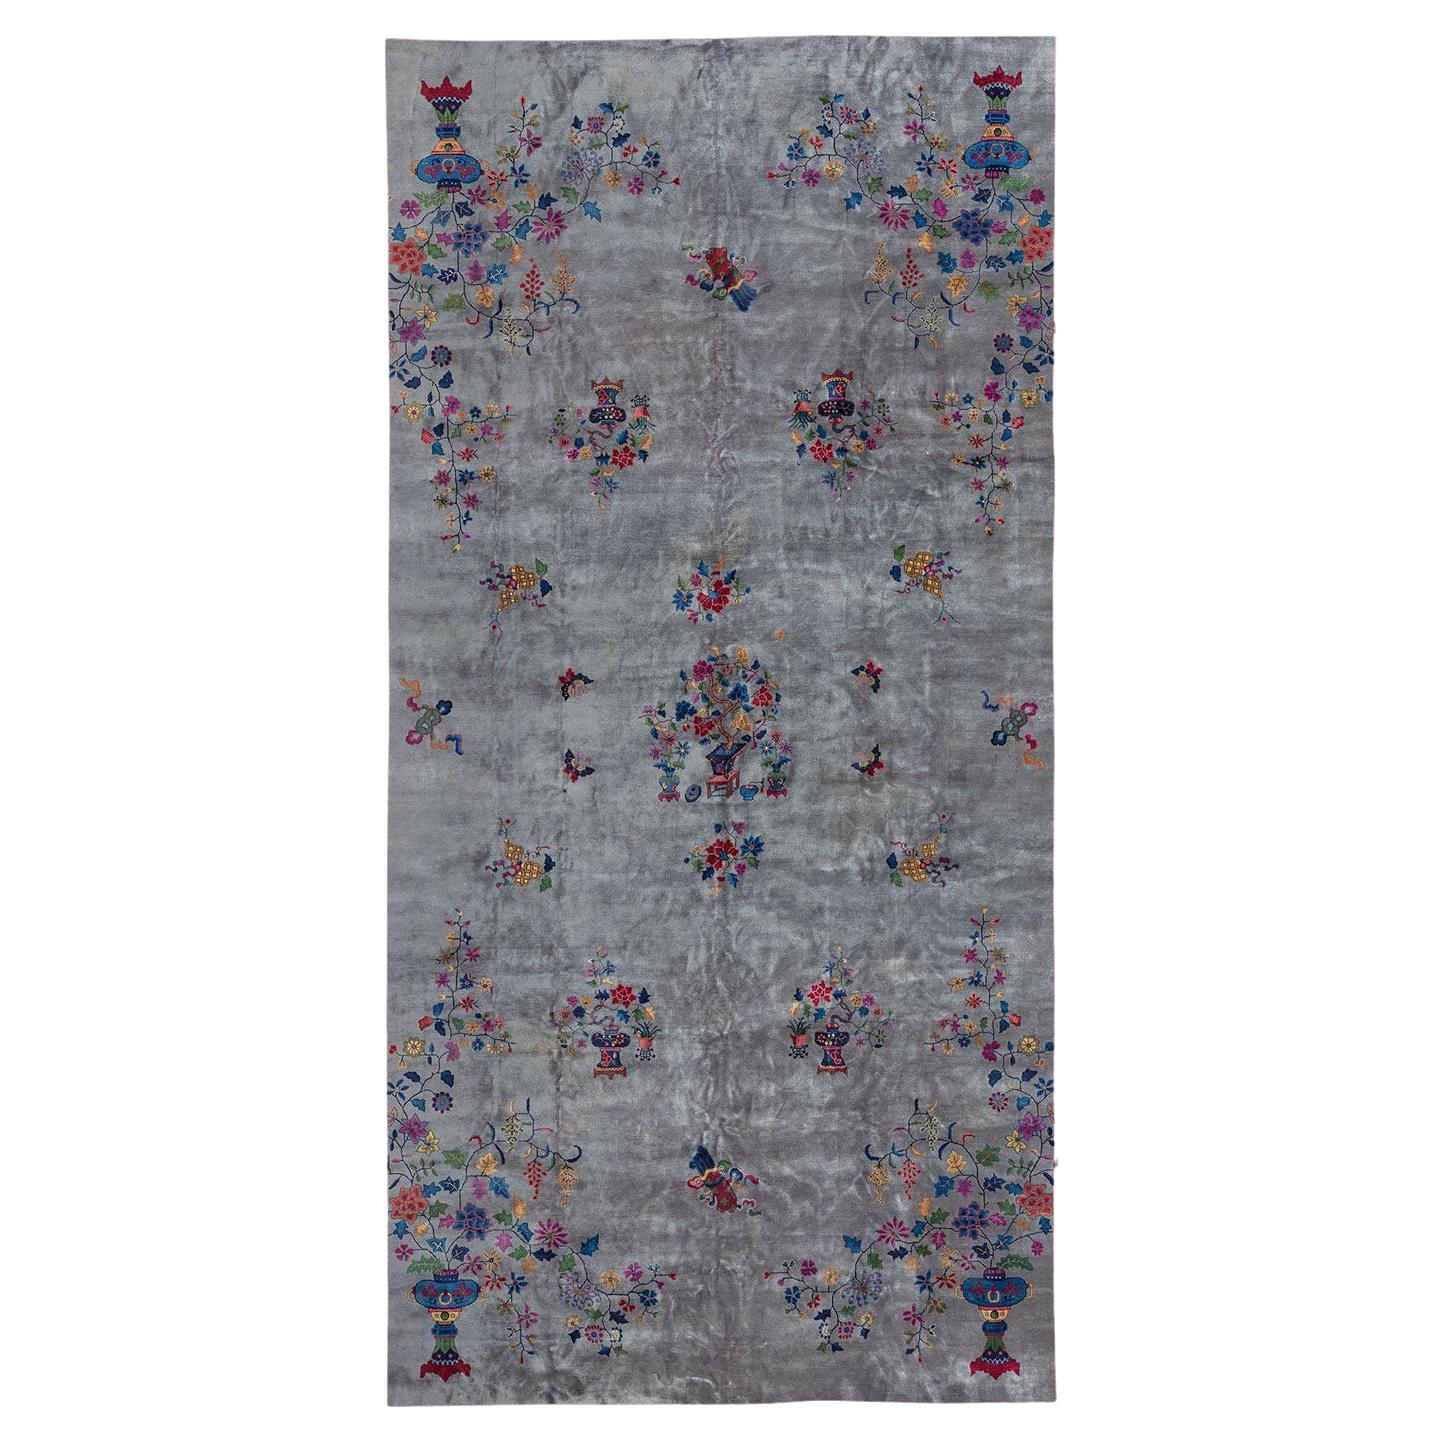 Atemberaubender großer chinesischer Art-Déco-Teppich mit einem schönen Blumenmuster auf einem grauen Feld und einer Pflaumenbordüre.

Die meisten finden sich in Raumformaten von 8 x 10, 9 x 12, dieses hier ist fast 13 x 23 Fuß groß.

Maße: 13'2